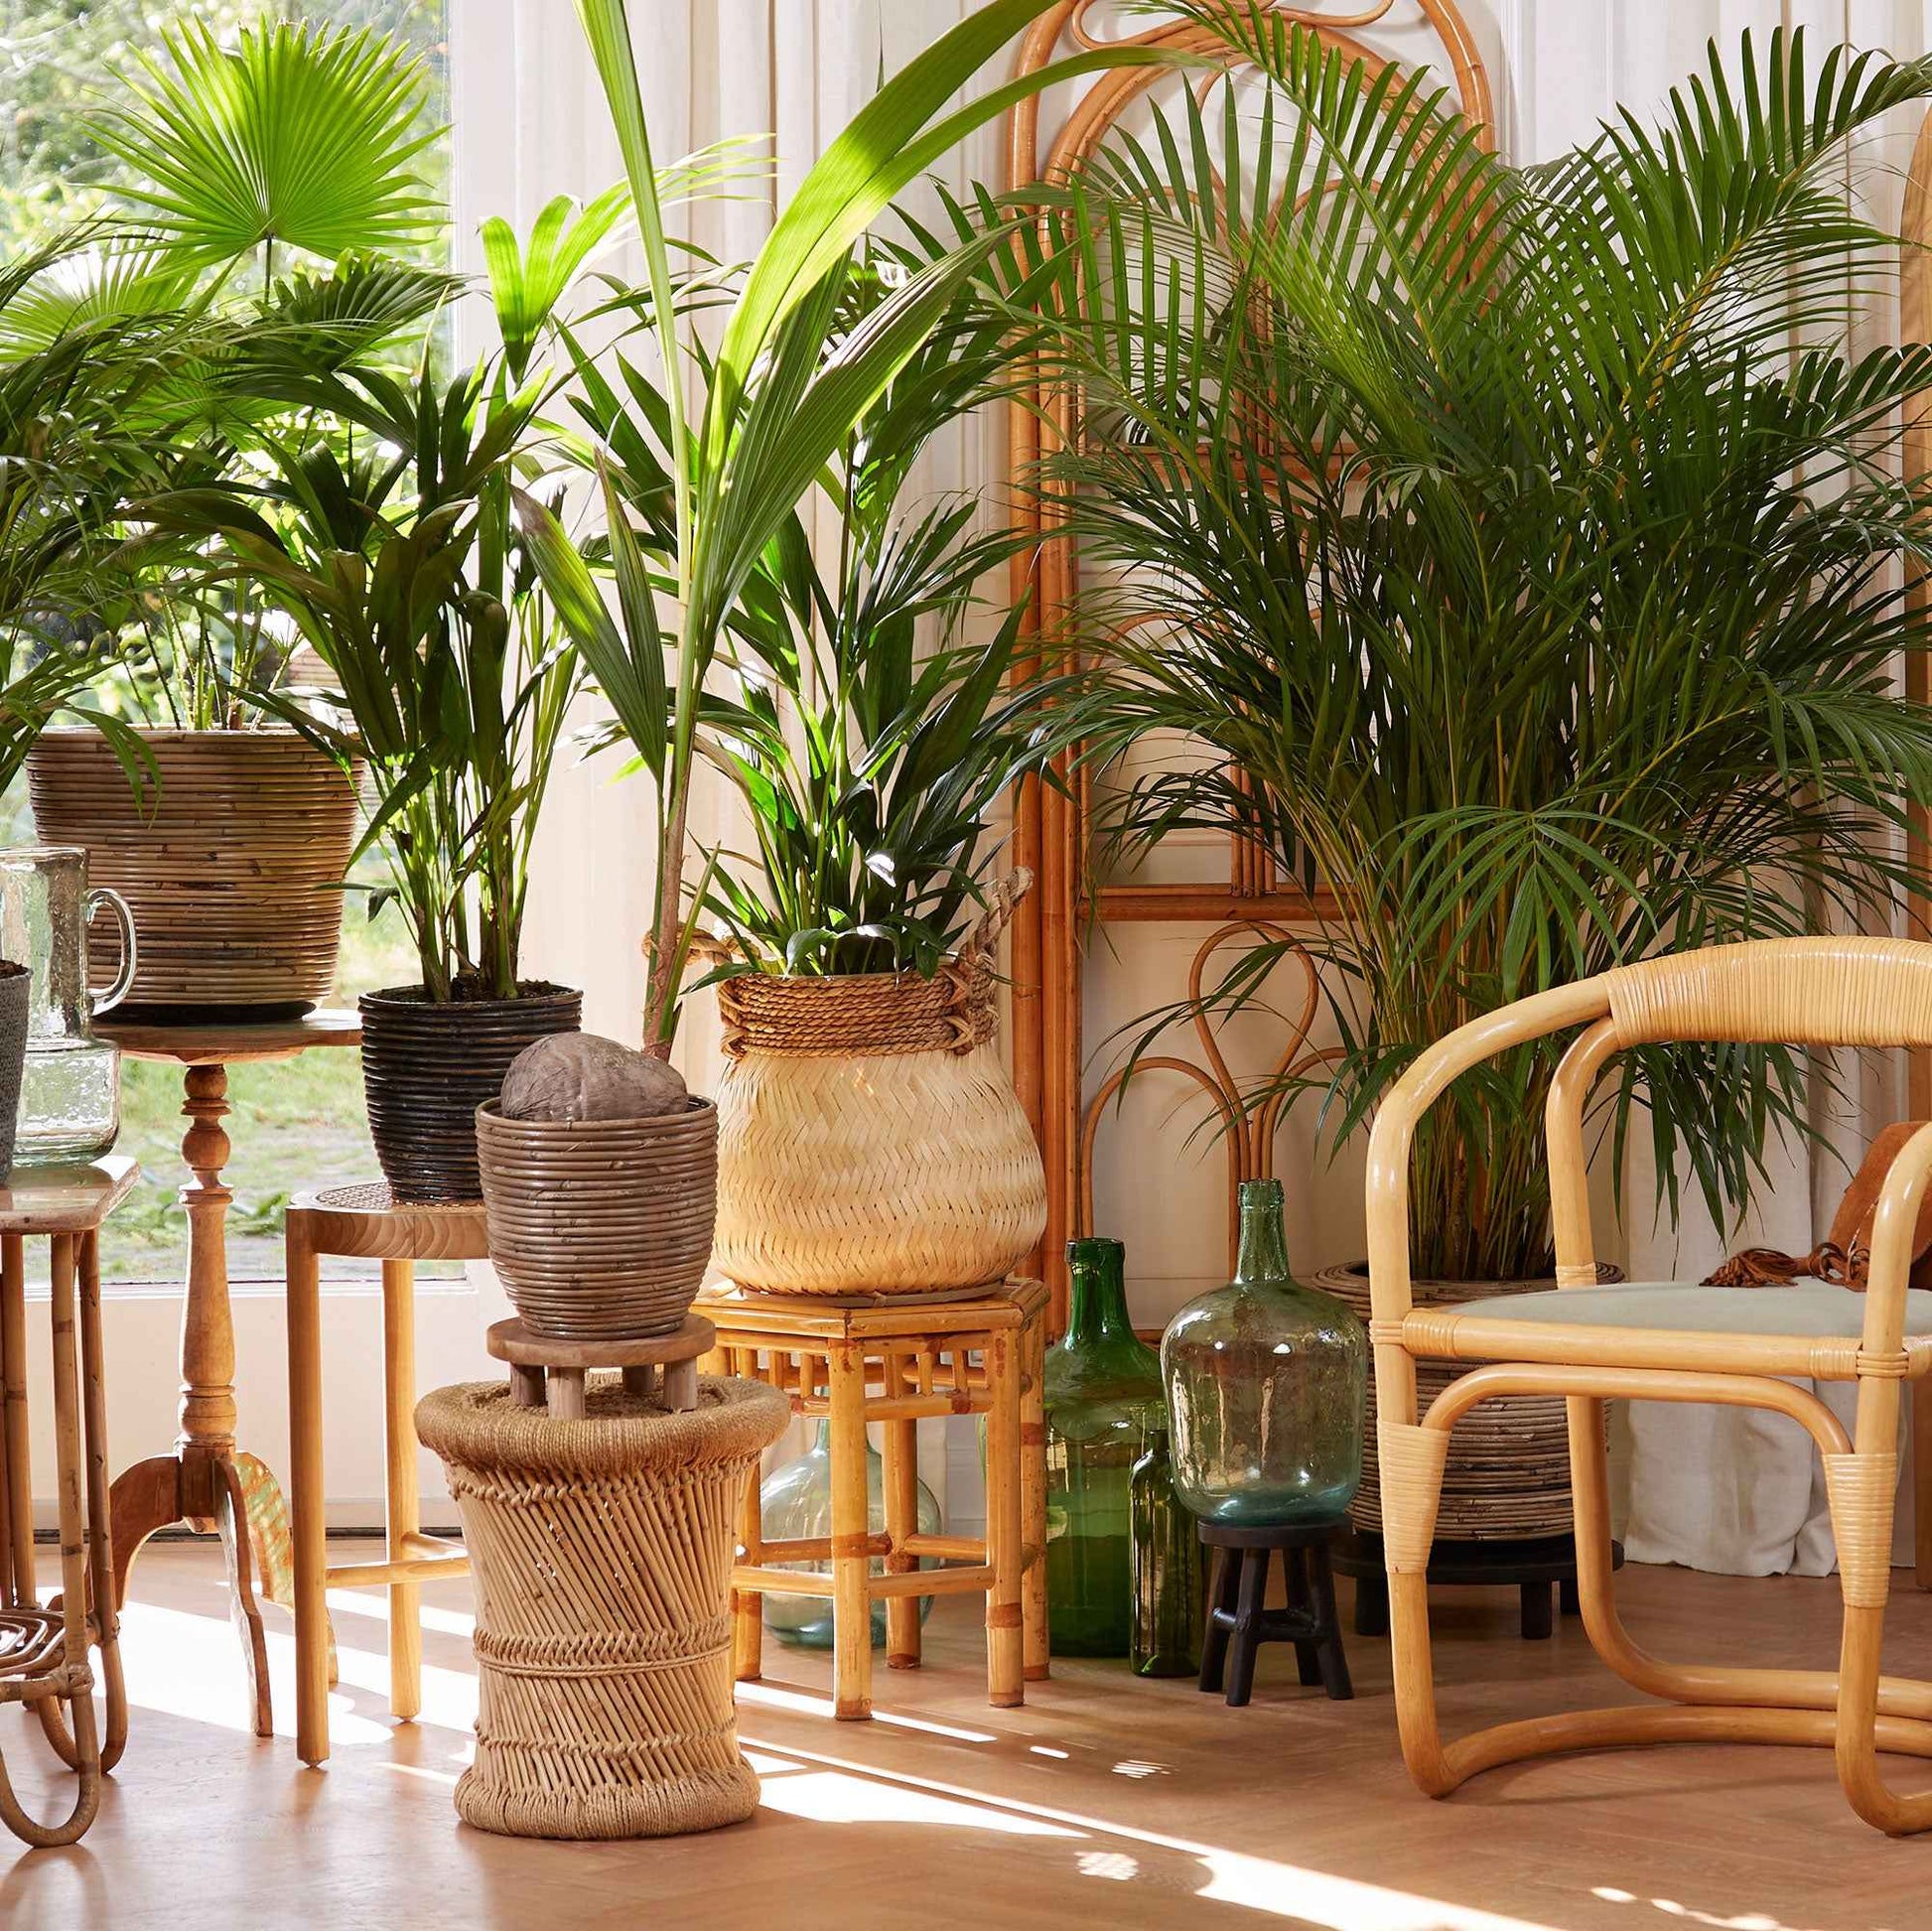 Bambuskorb rund braun - Innen- und Außentopf - Blumentopf Material